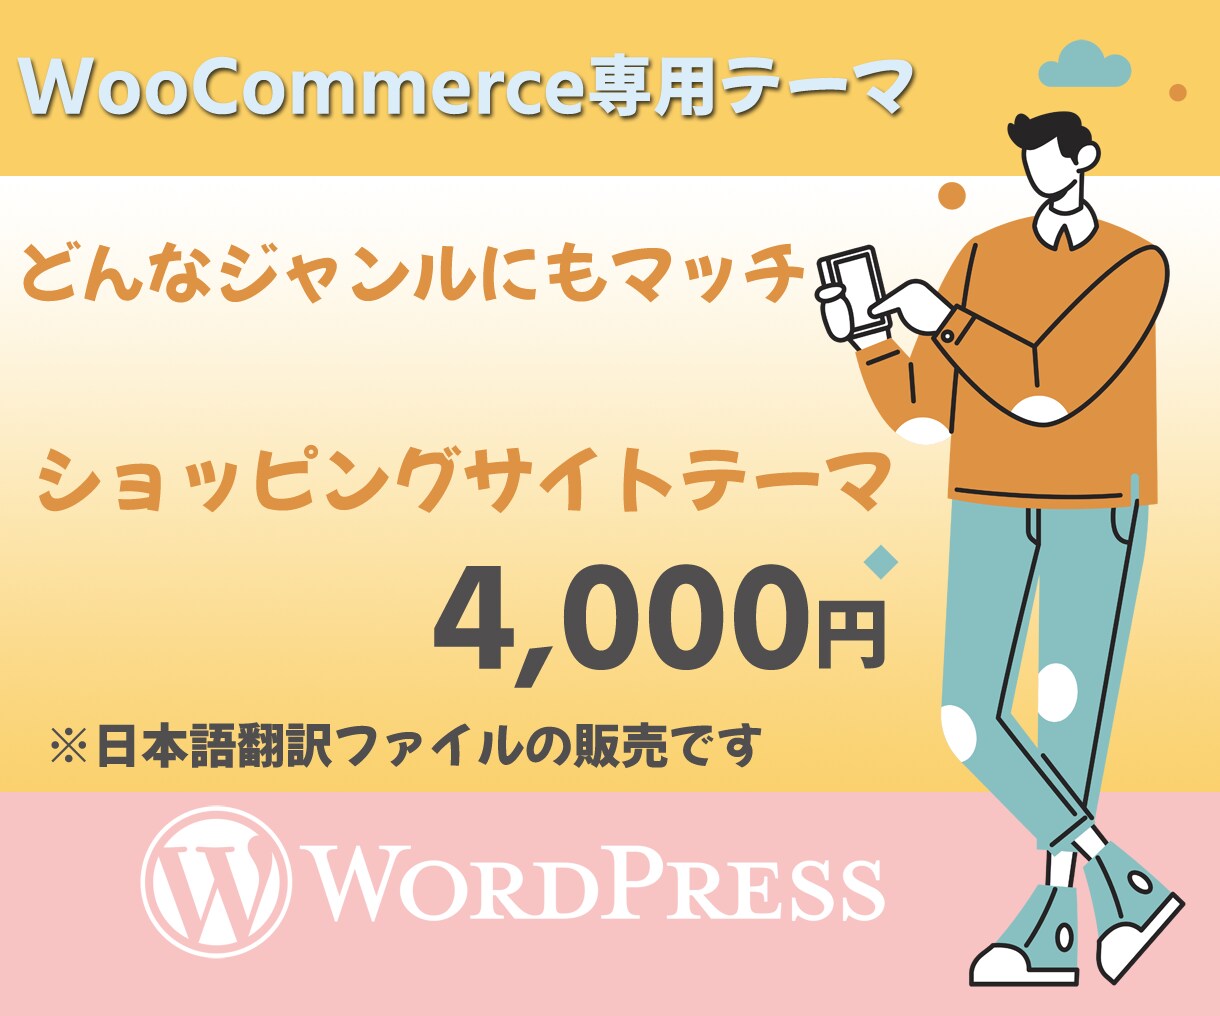 ネットショップを手軽に自分で運営できます Woocommerce特化型の海外テーマの日本語翻訳データ イメージ1